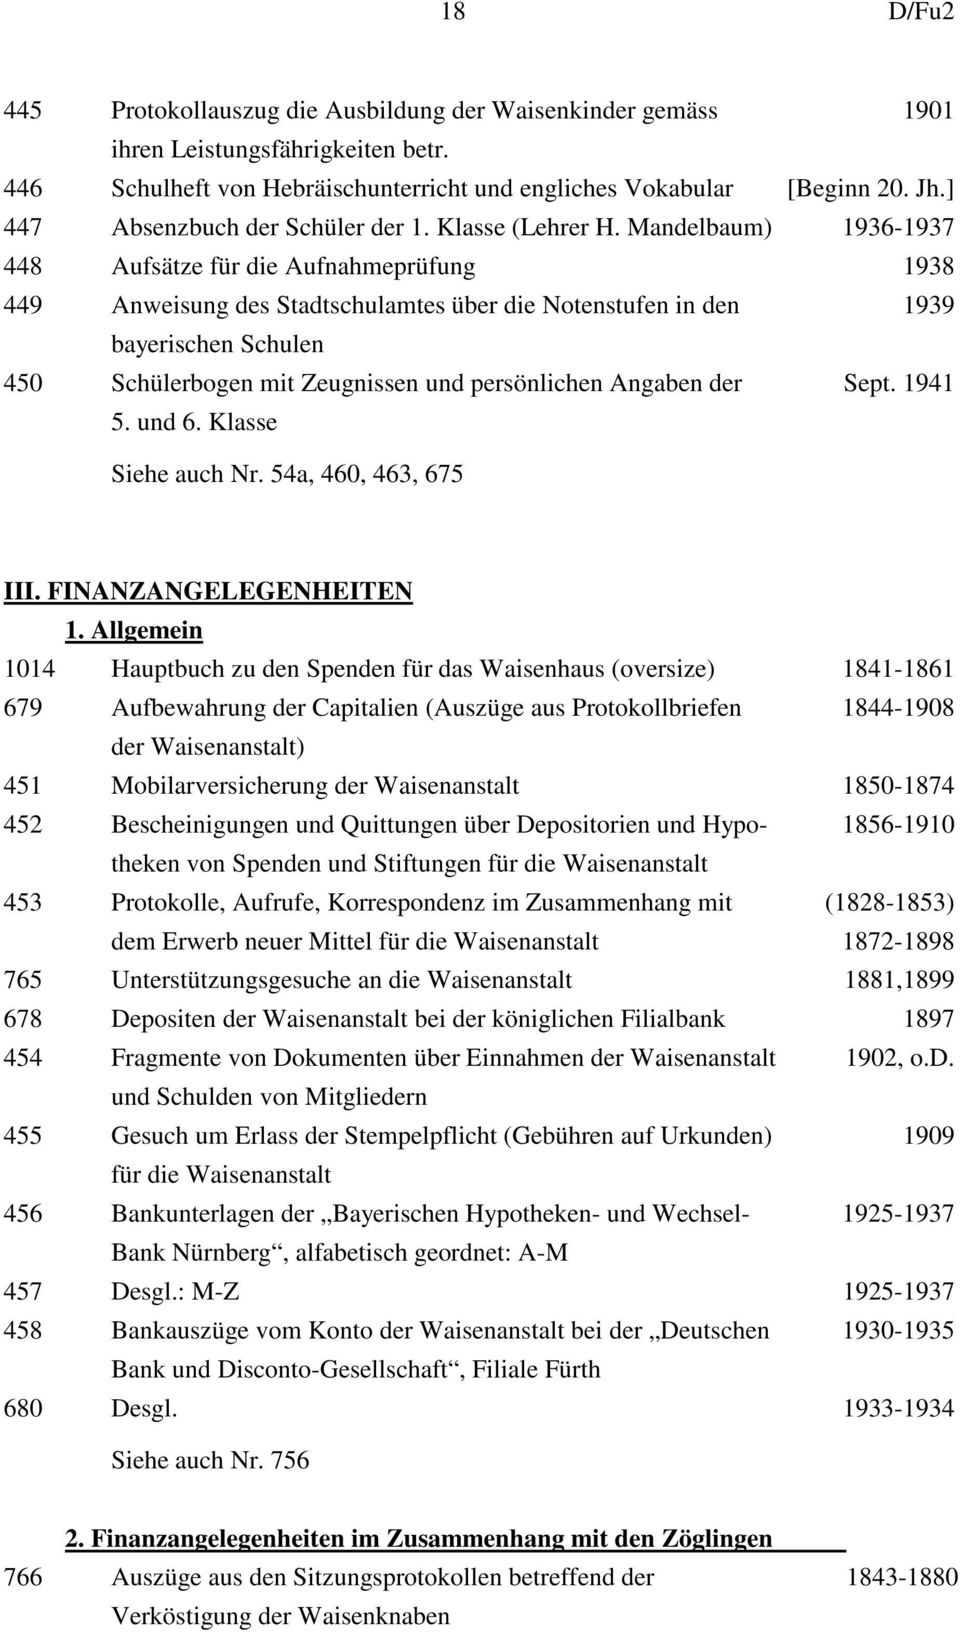 Mandelbaum) 1936-1937 448 Aufsätze für die Aufnahmeprüfung 1938 449 Anweisung des Stadtschulamtes über die Notenstufen in den 1939 bayerischen Schulen 450 Schülerbogen mit Zeugnissen und persönlichen